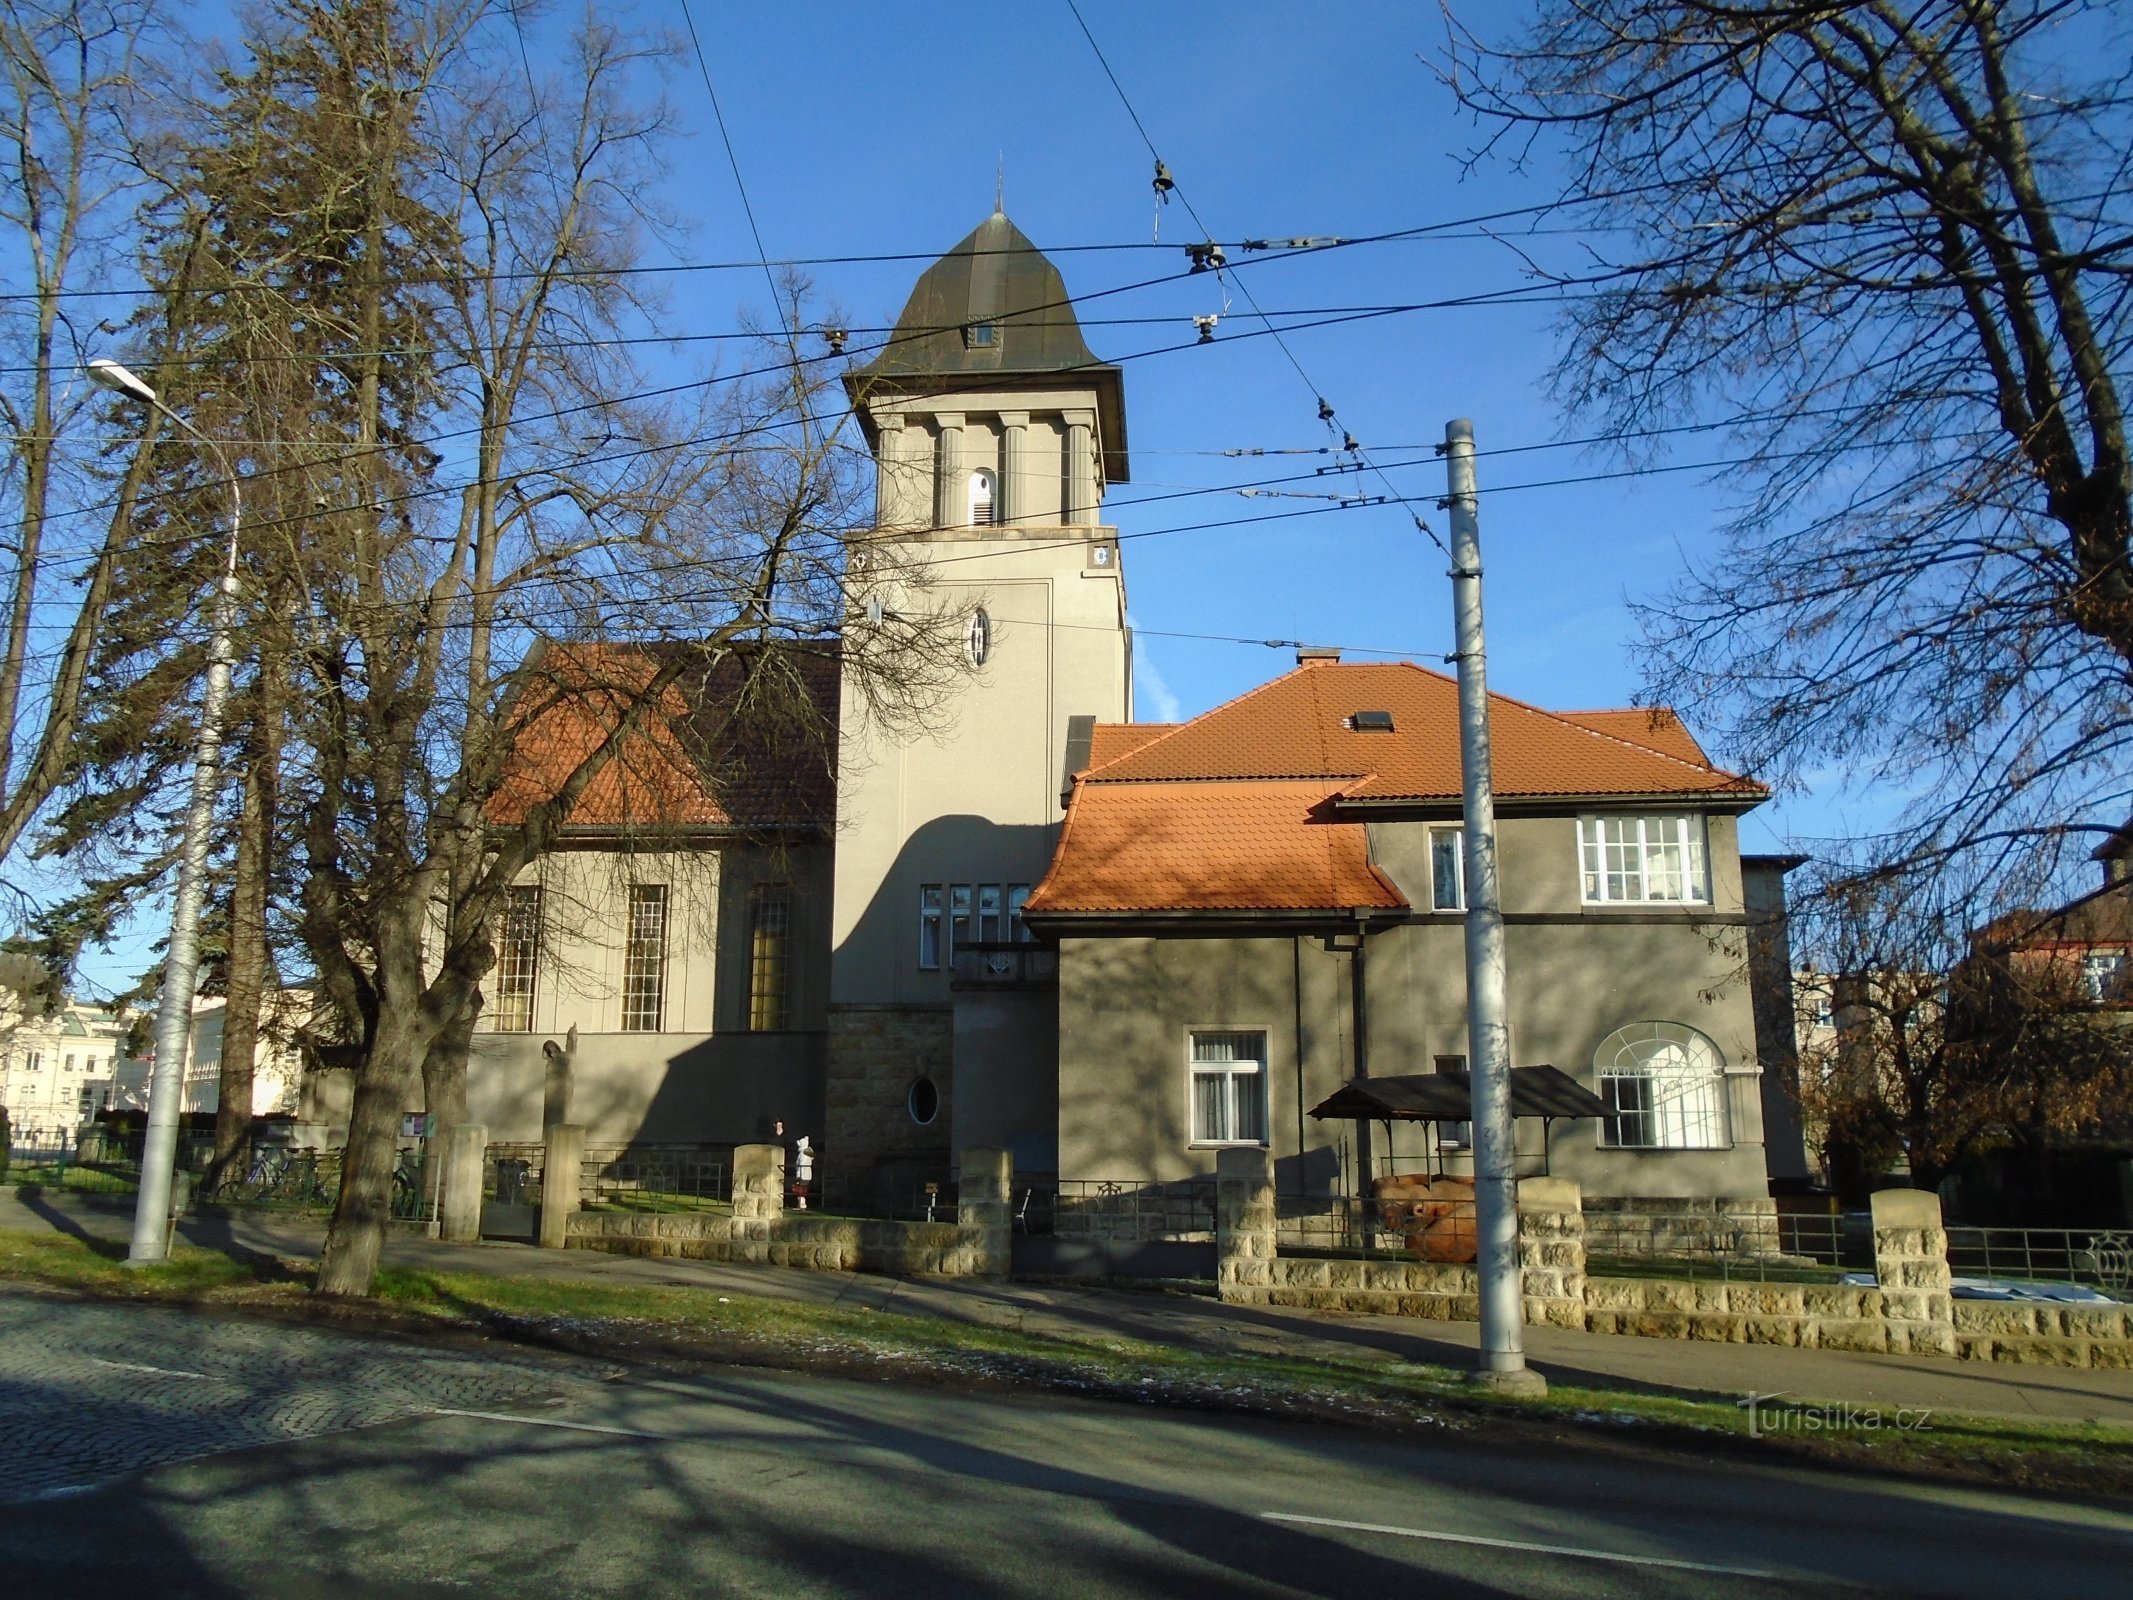 Evangelisk kyrka med prästgård (Hradec Králové, 10.12.2017-XNUMX-XNUMX)